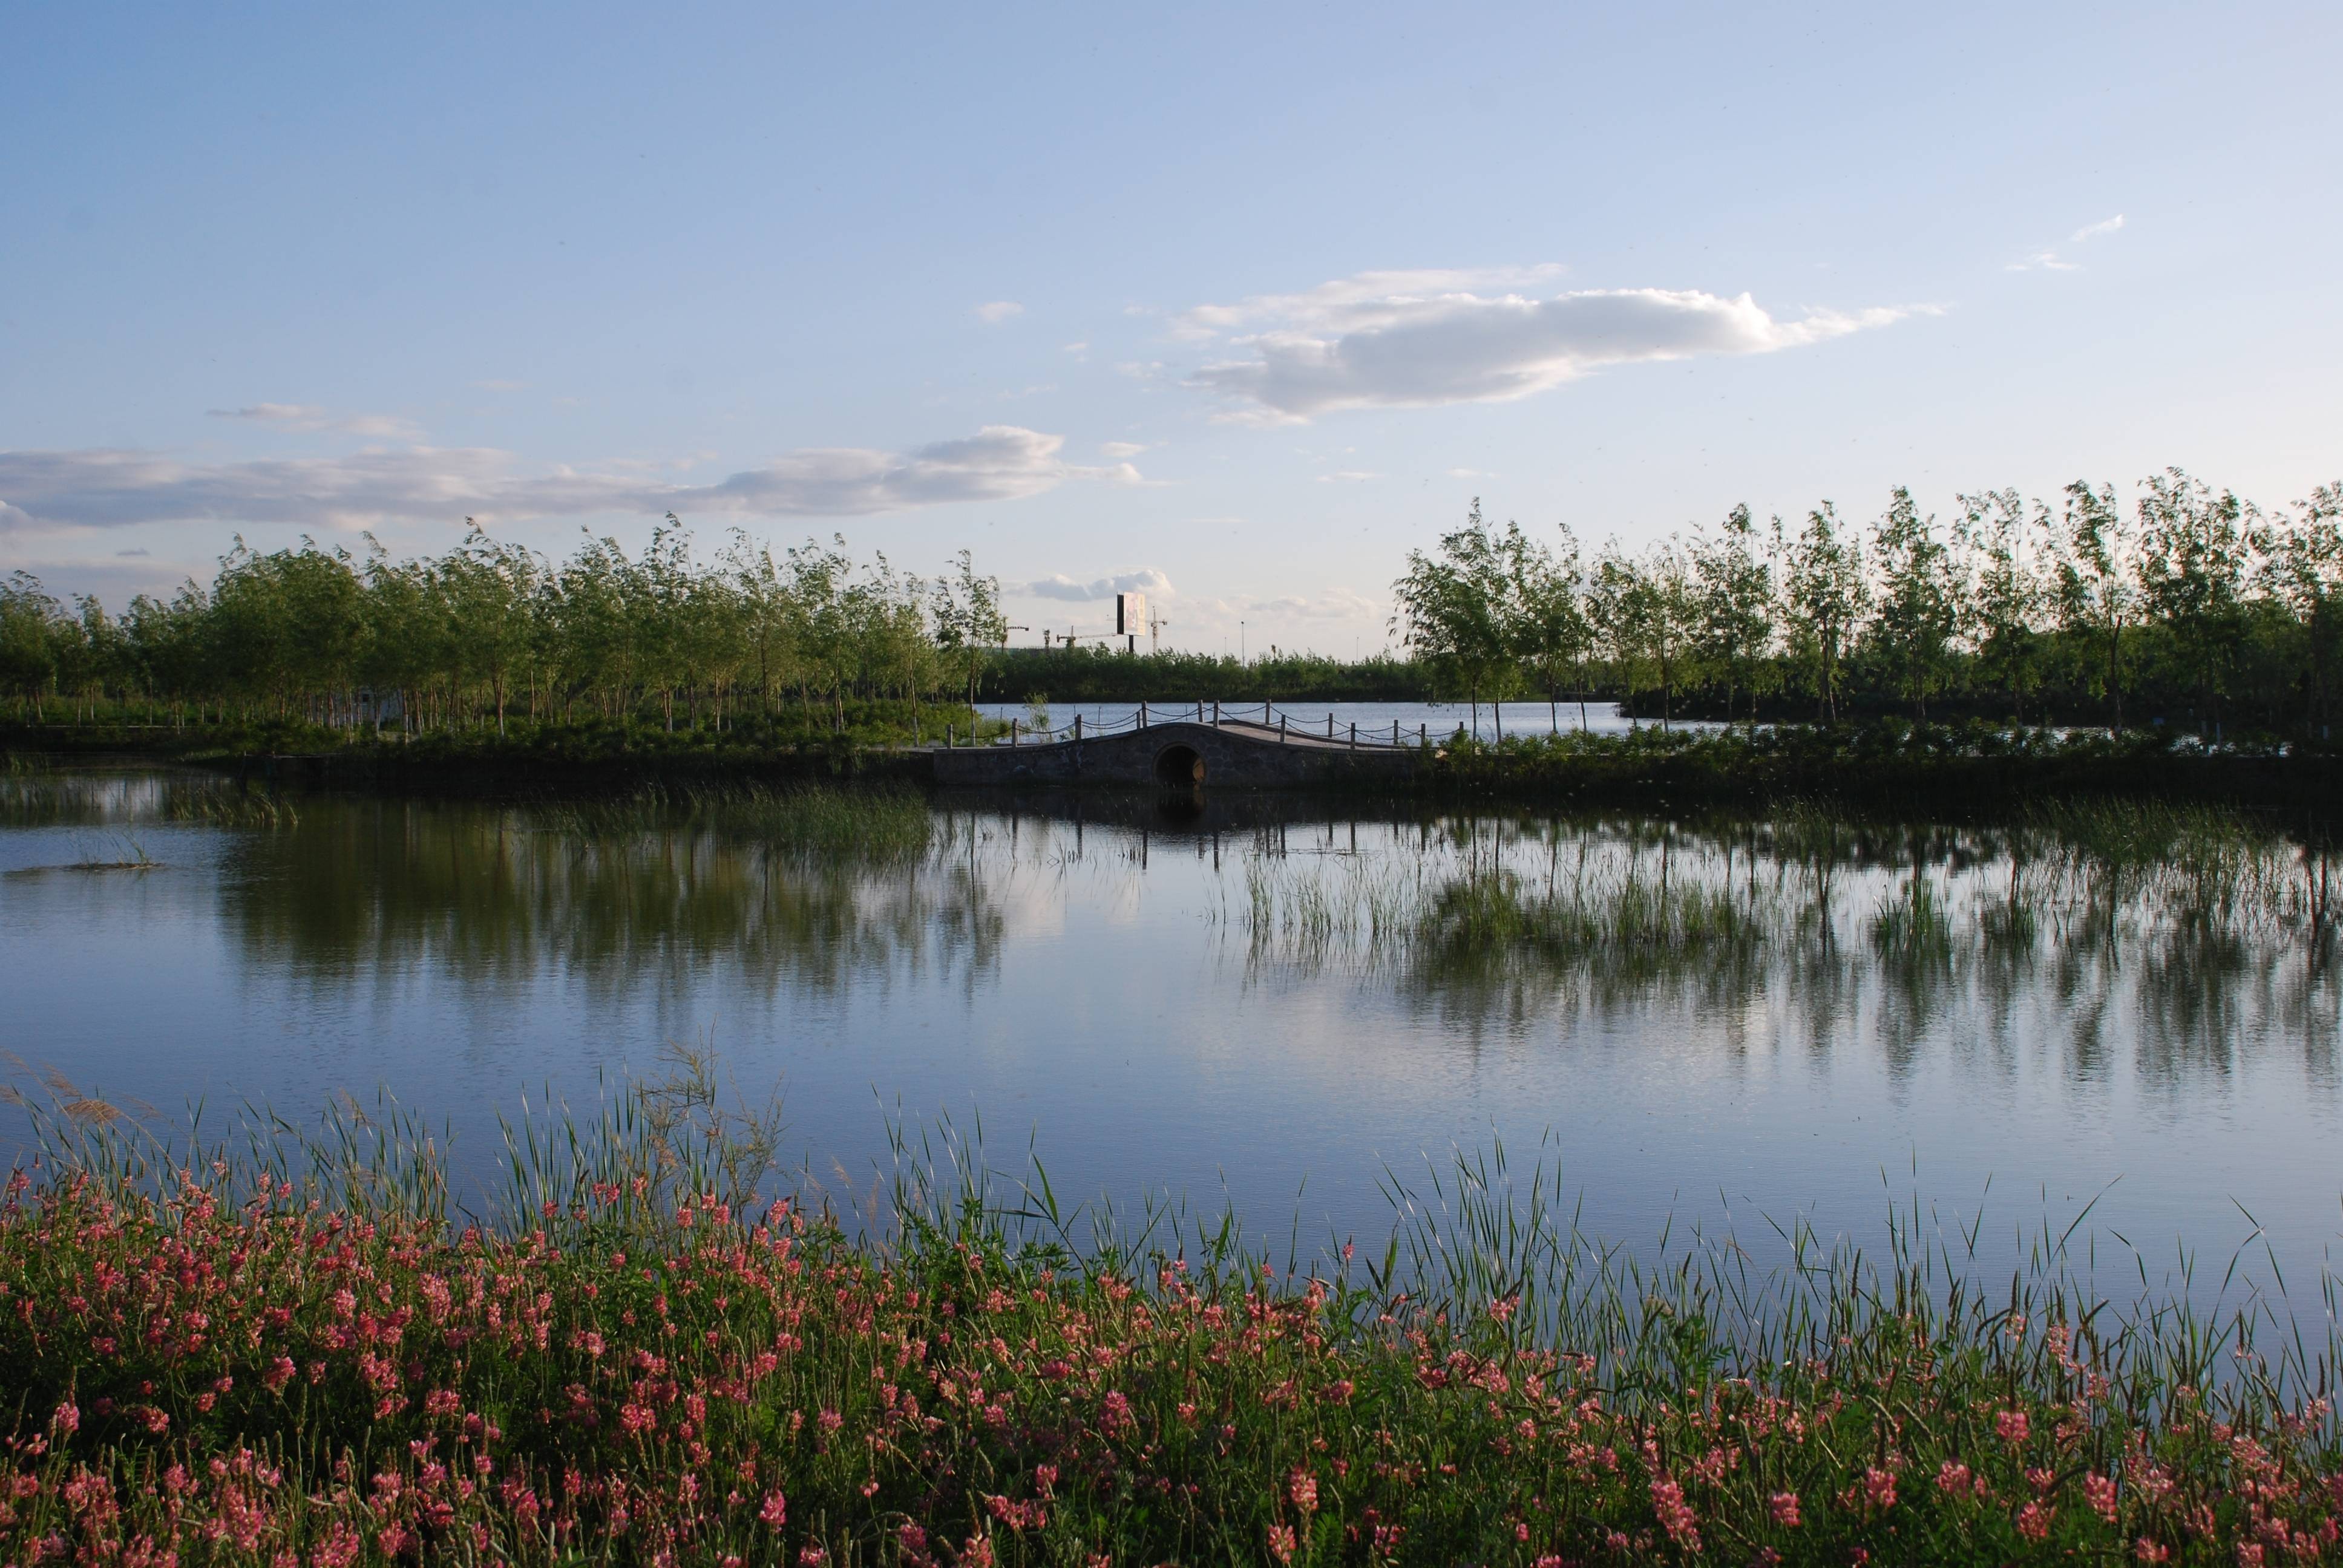 幽静美丽的湿地公园令人陶醉。摄于8月10日.JPG